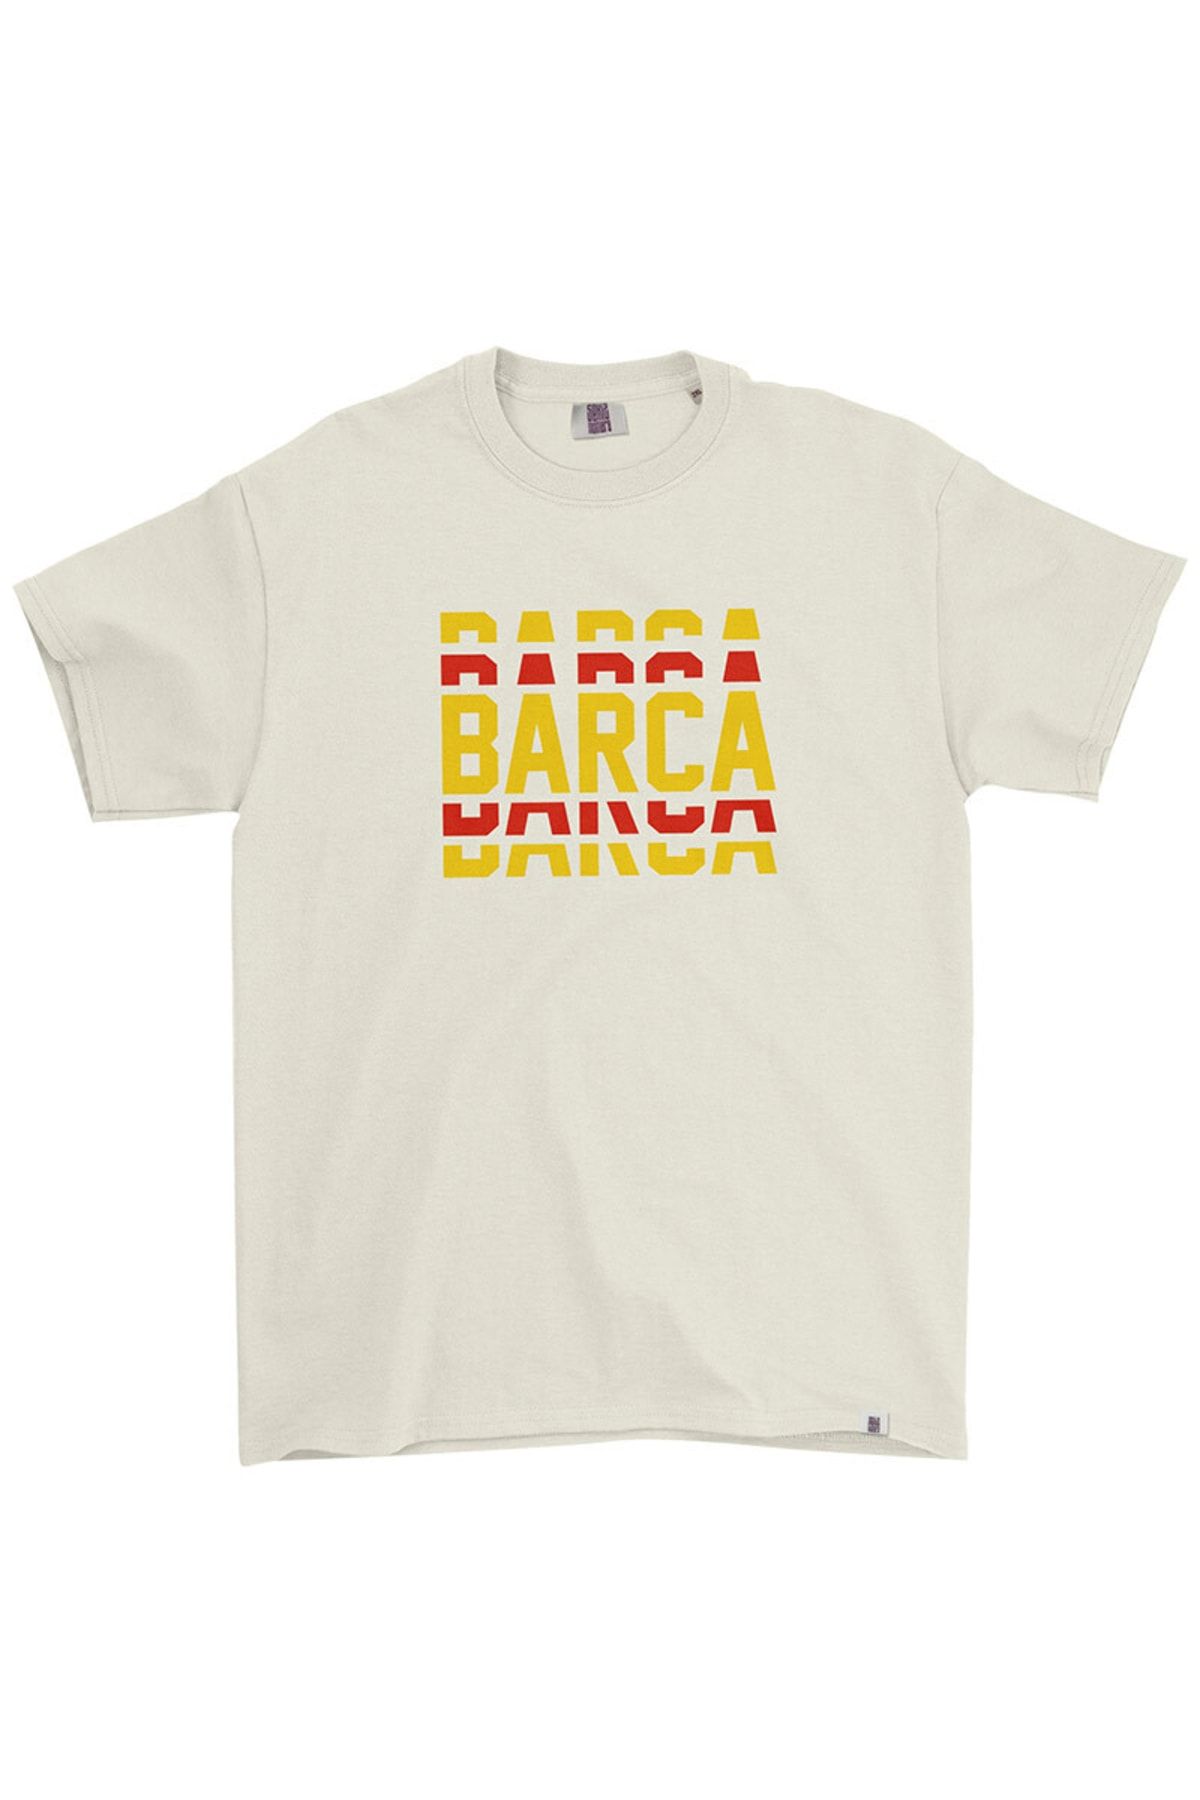 Sekiz Numara Barcelona Barca Tişört